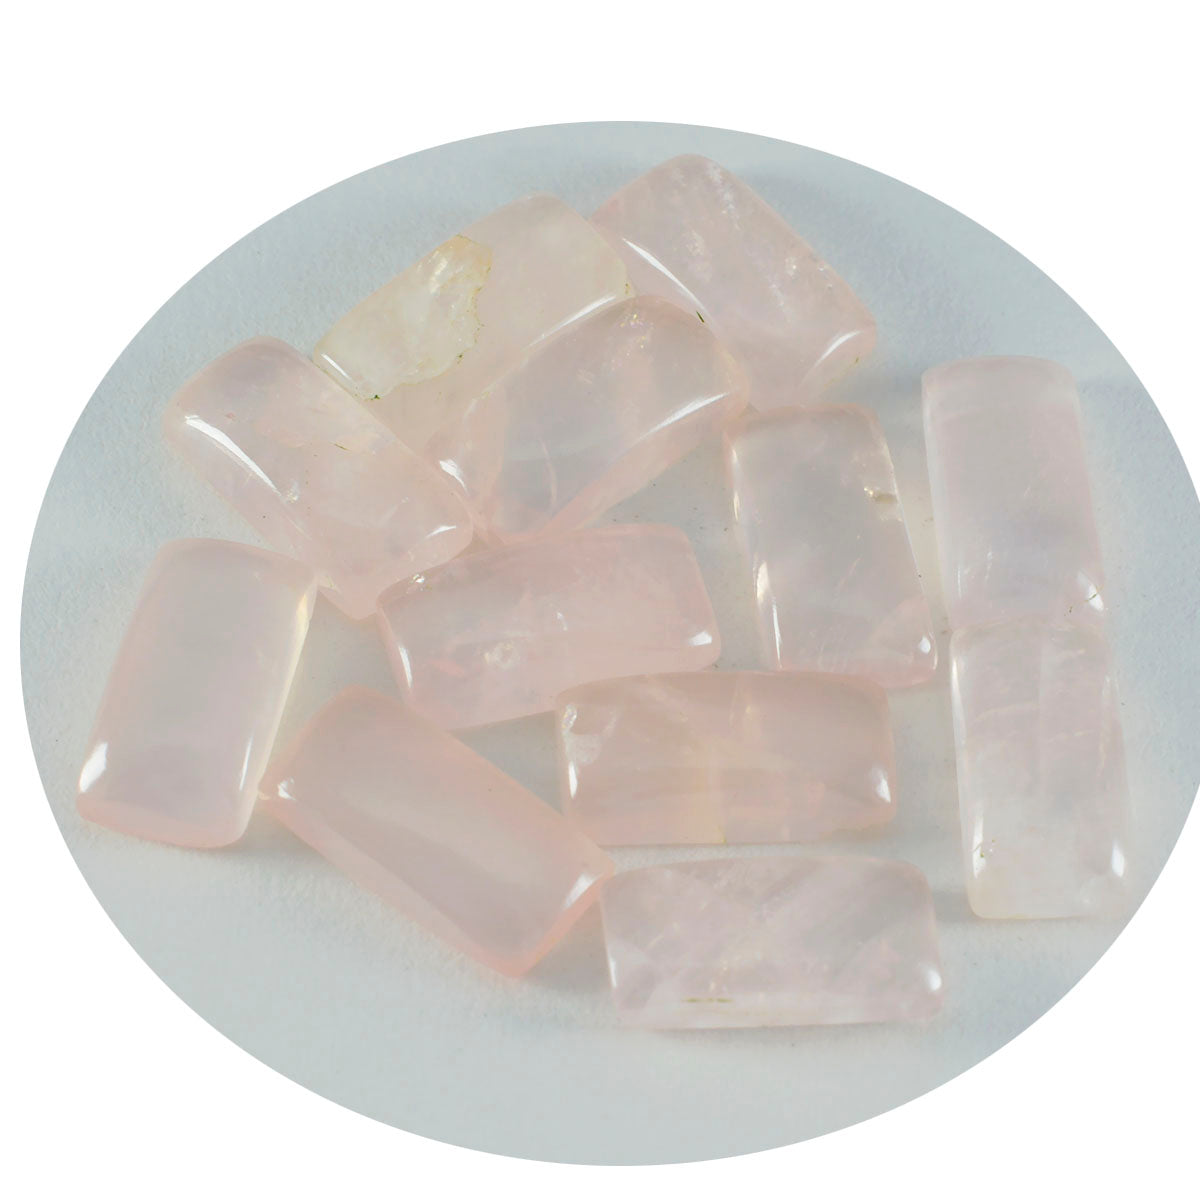 Riyogems 1PC Roze Rozenkwarts Cabochon 6x12 mm Baguett Vorm schattige Kwaliteit Losse Edelstenen